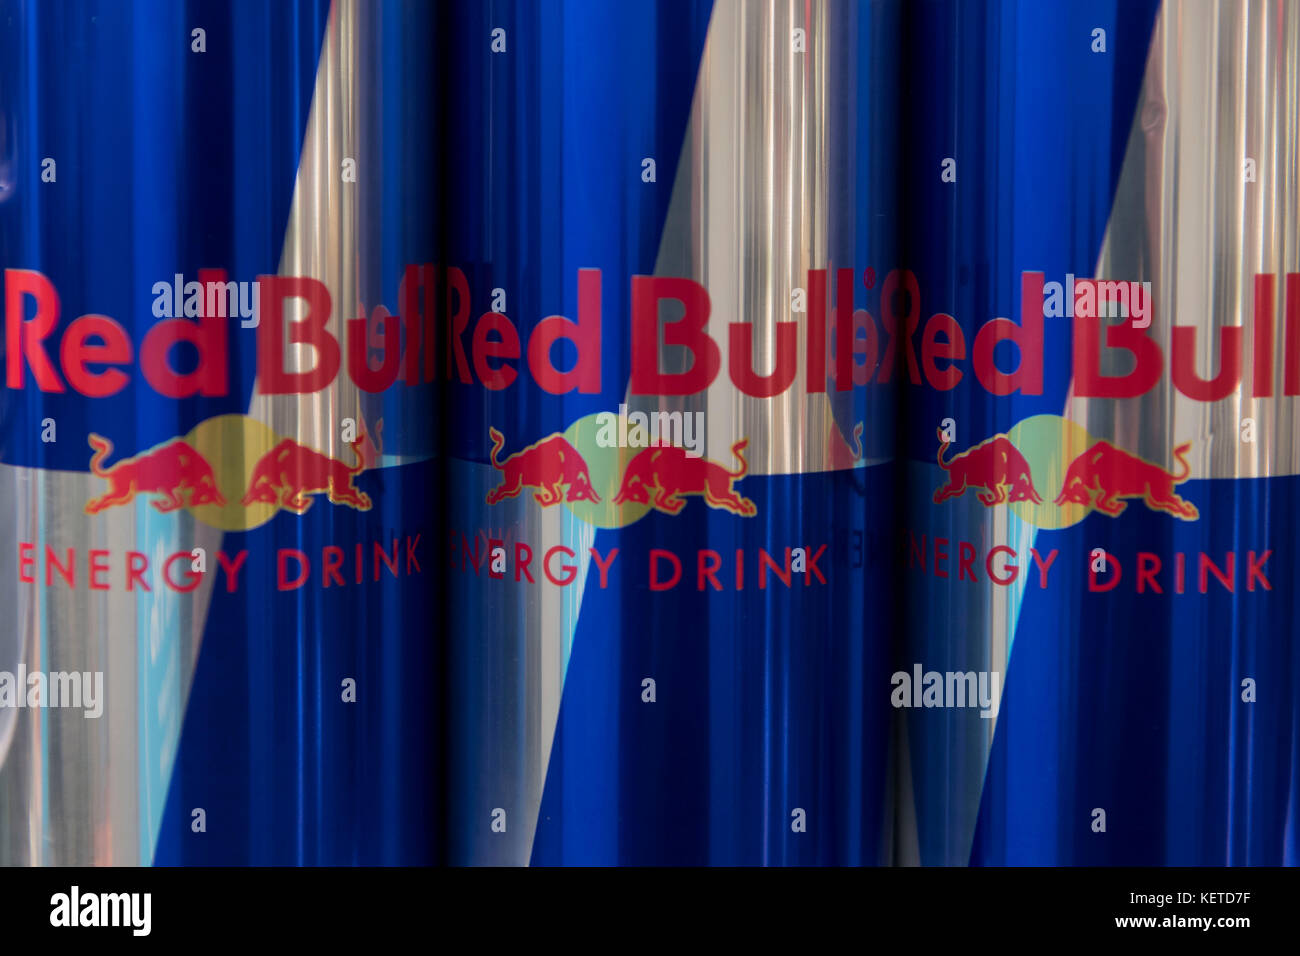 Le lattine di energy drink Red Bull sul display un supermercato scaffale del negozio. Foto Stock